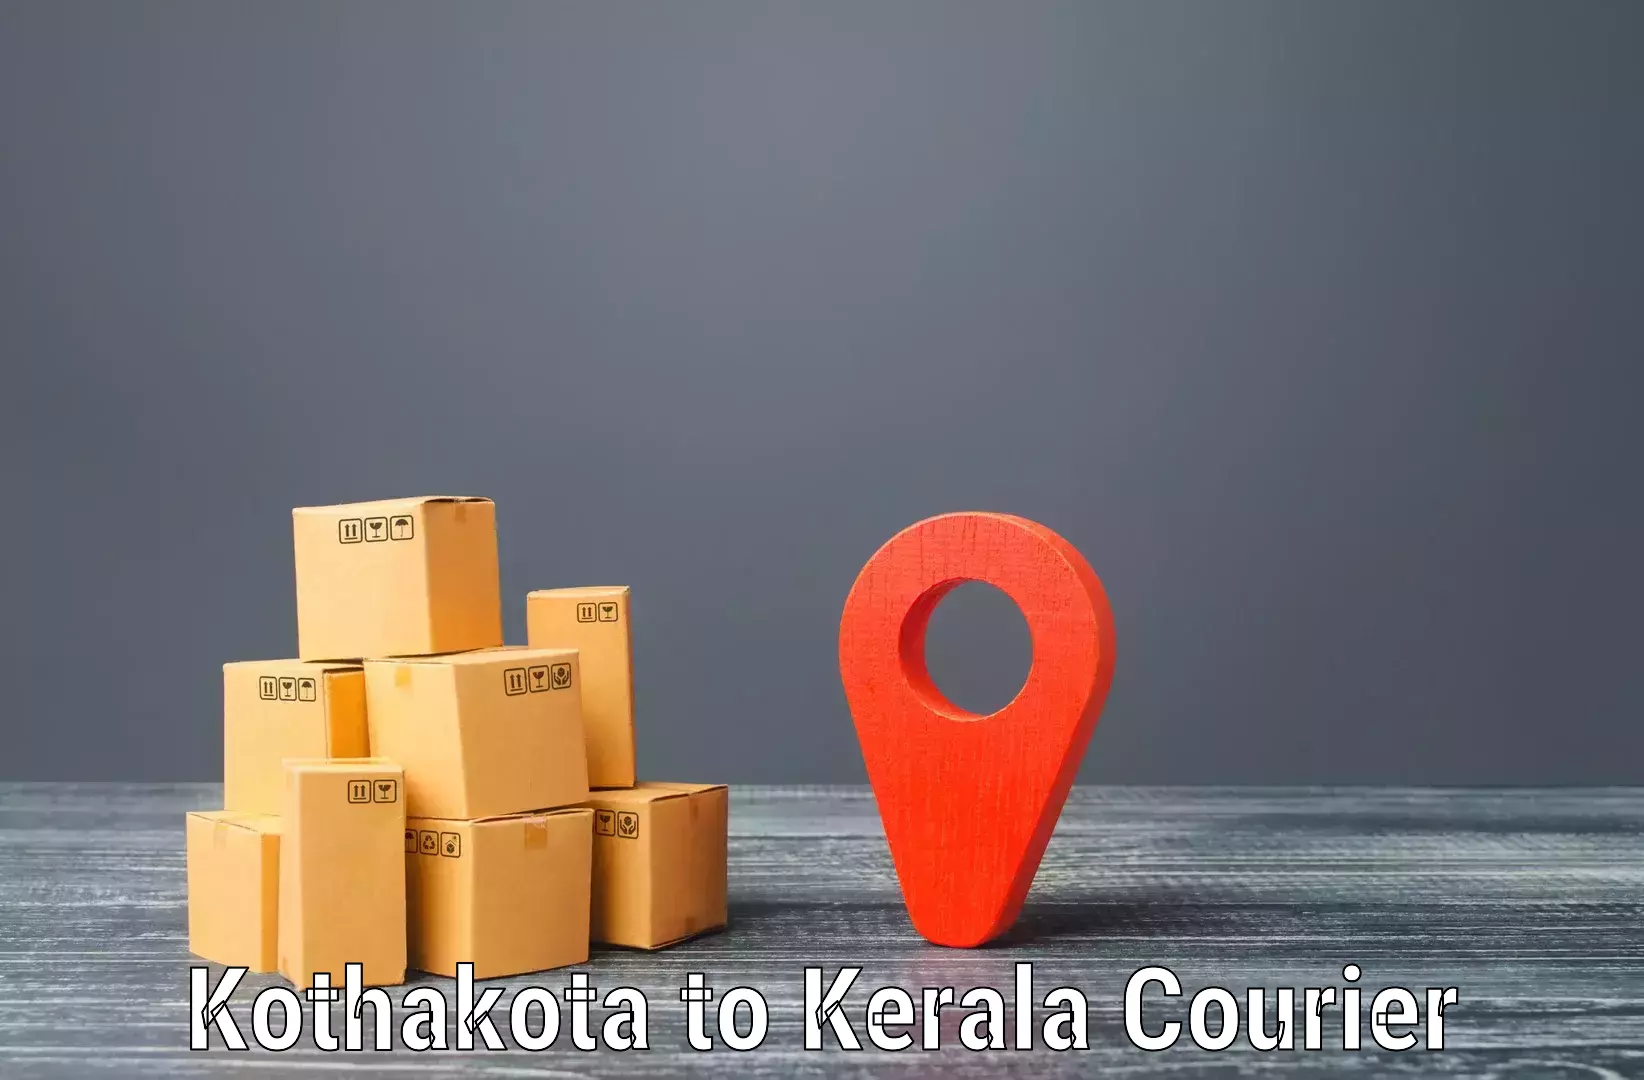 Reliable delivery network Kothakota to Kottarakkara